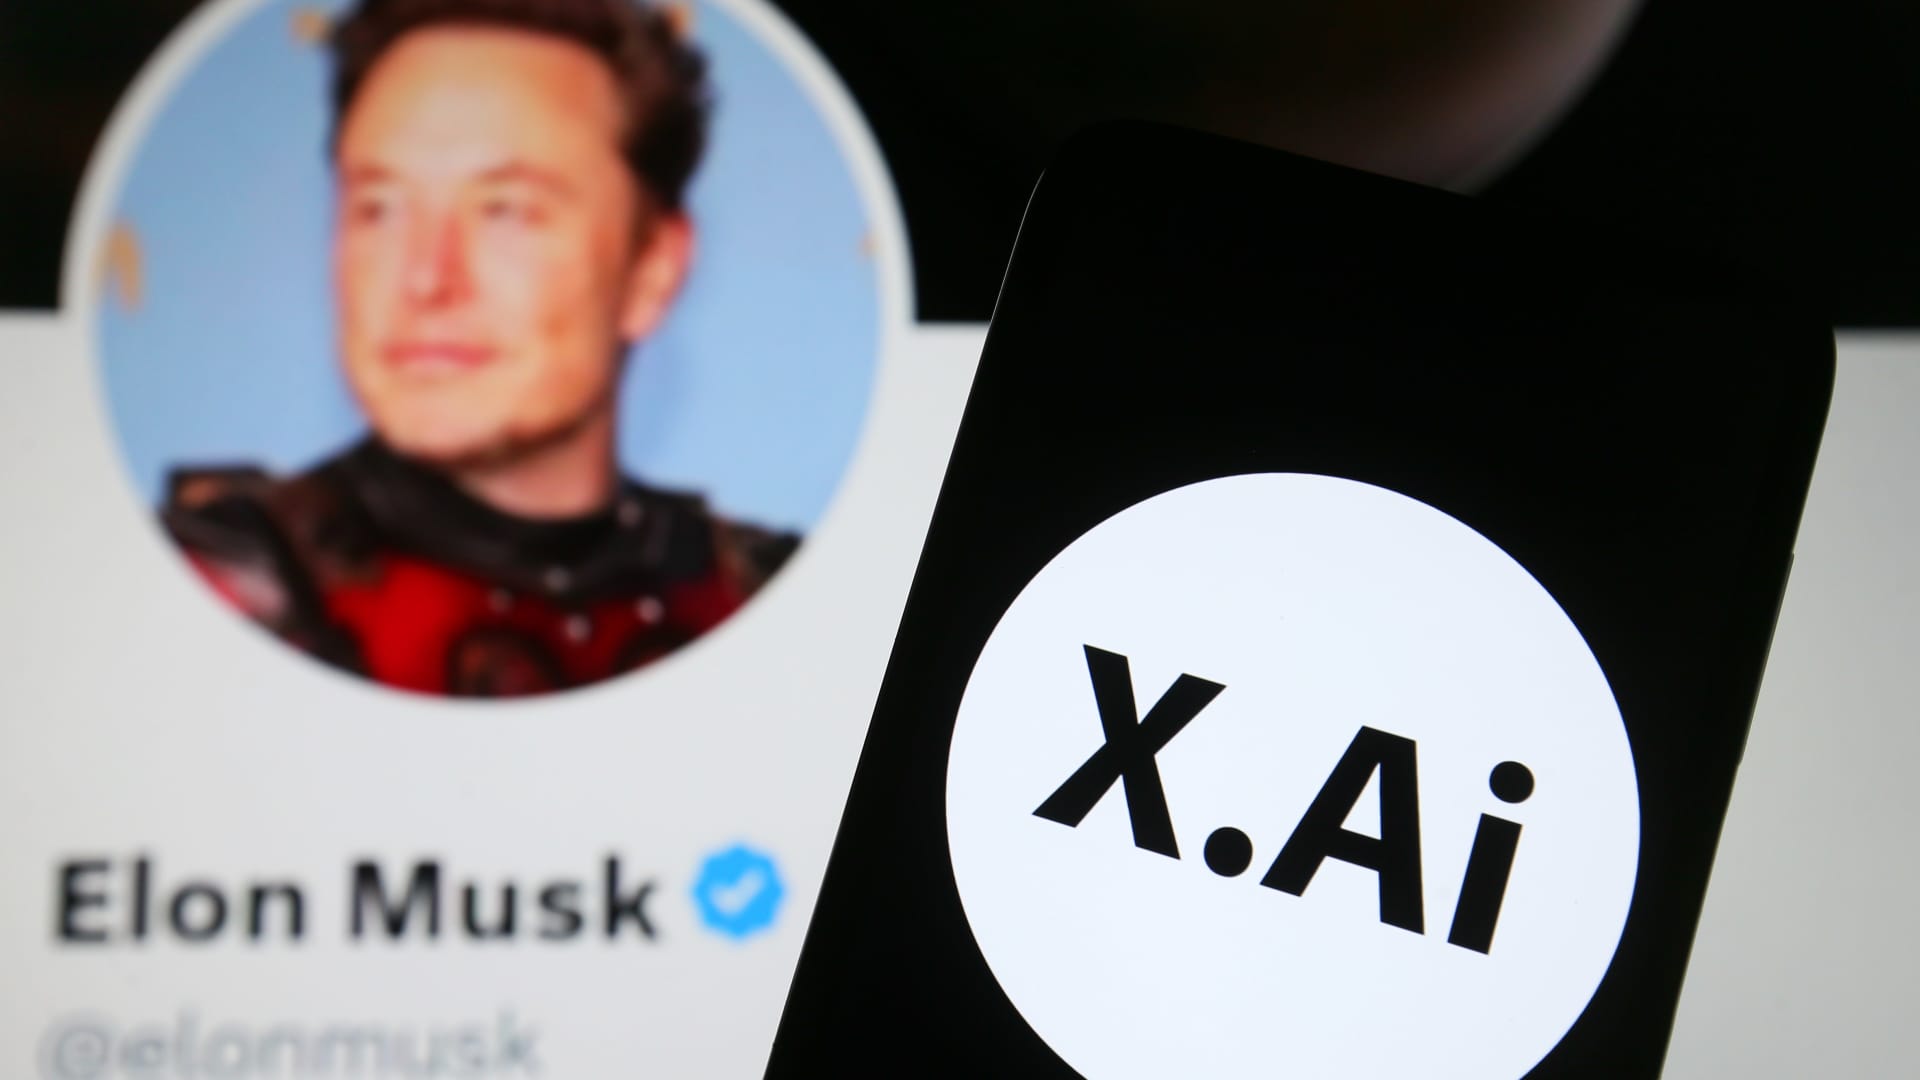 Musk amenaza con demandar a Microsoft por usar datos de Twitter en inteligencia artificial.